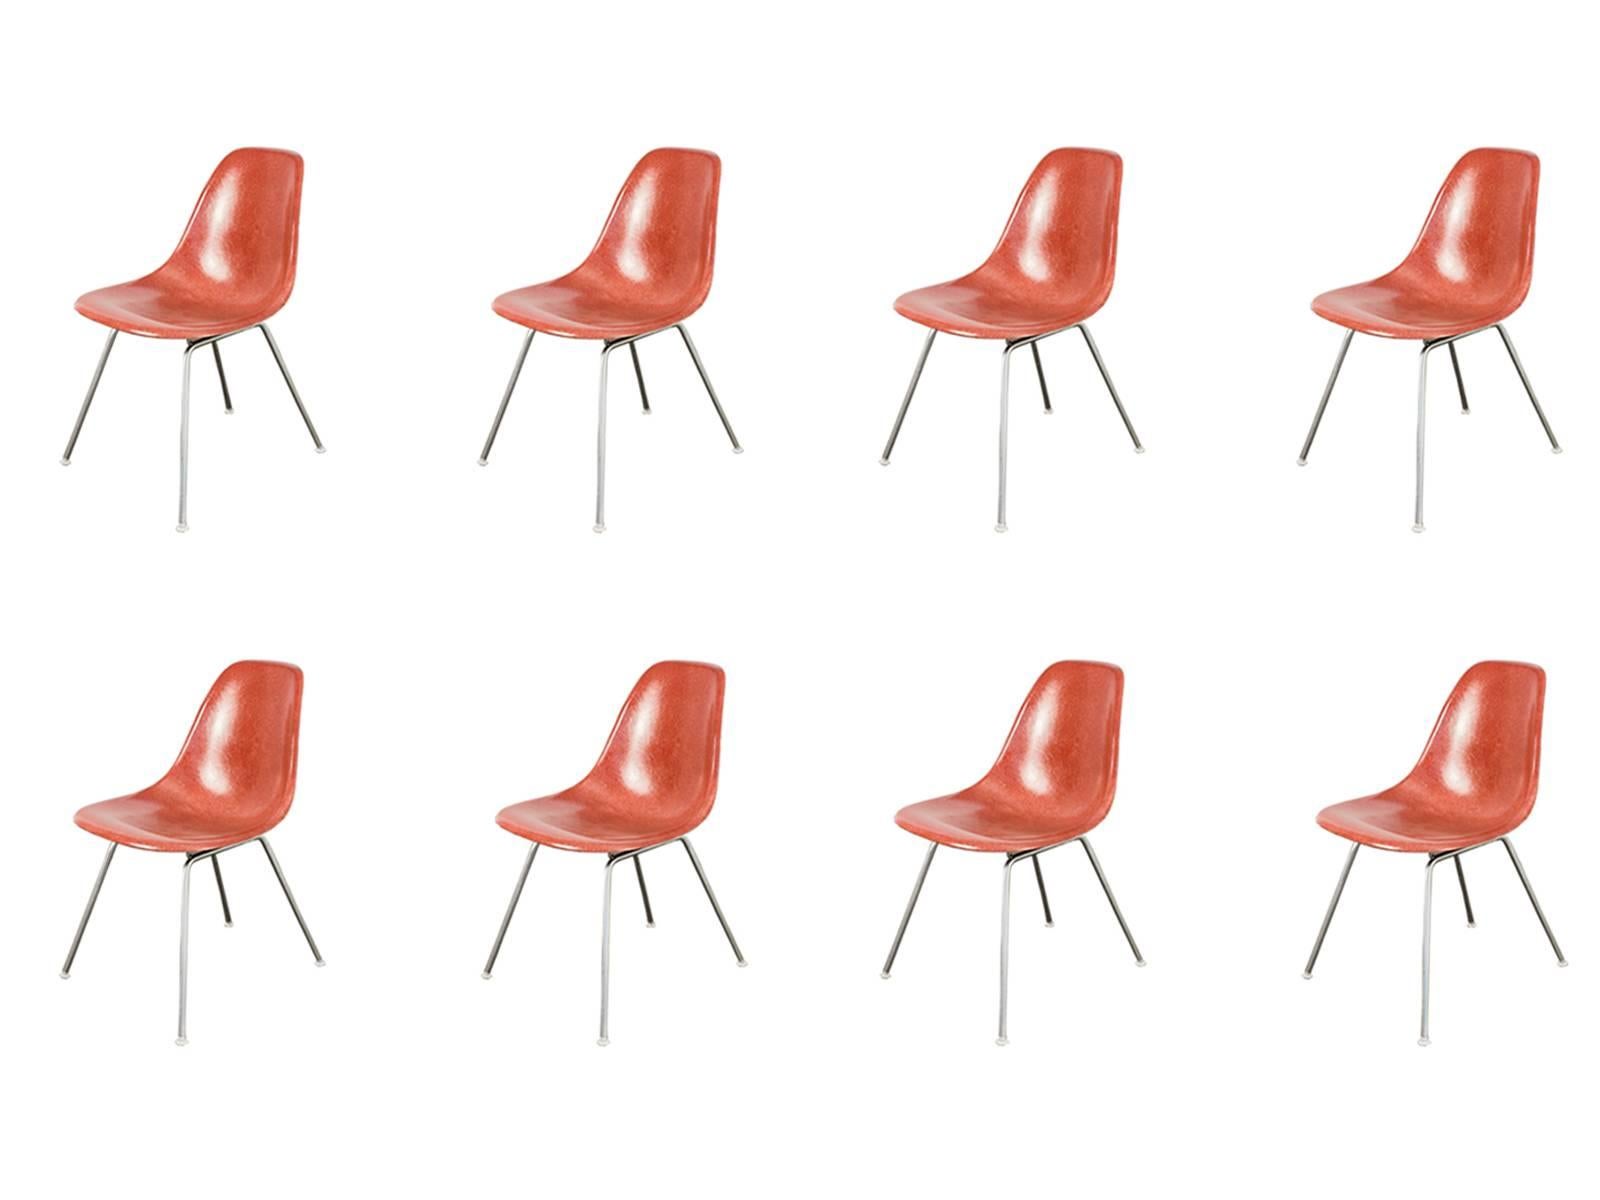 Eames for Herman Miller Terracotta Fiberglass Shell Chair For Sale 2